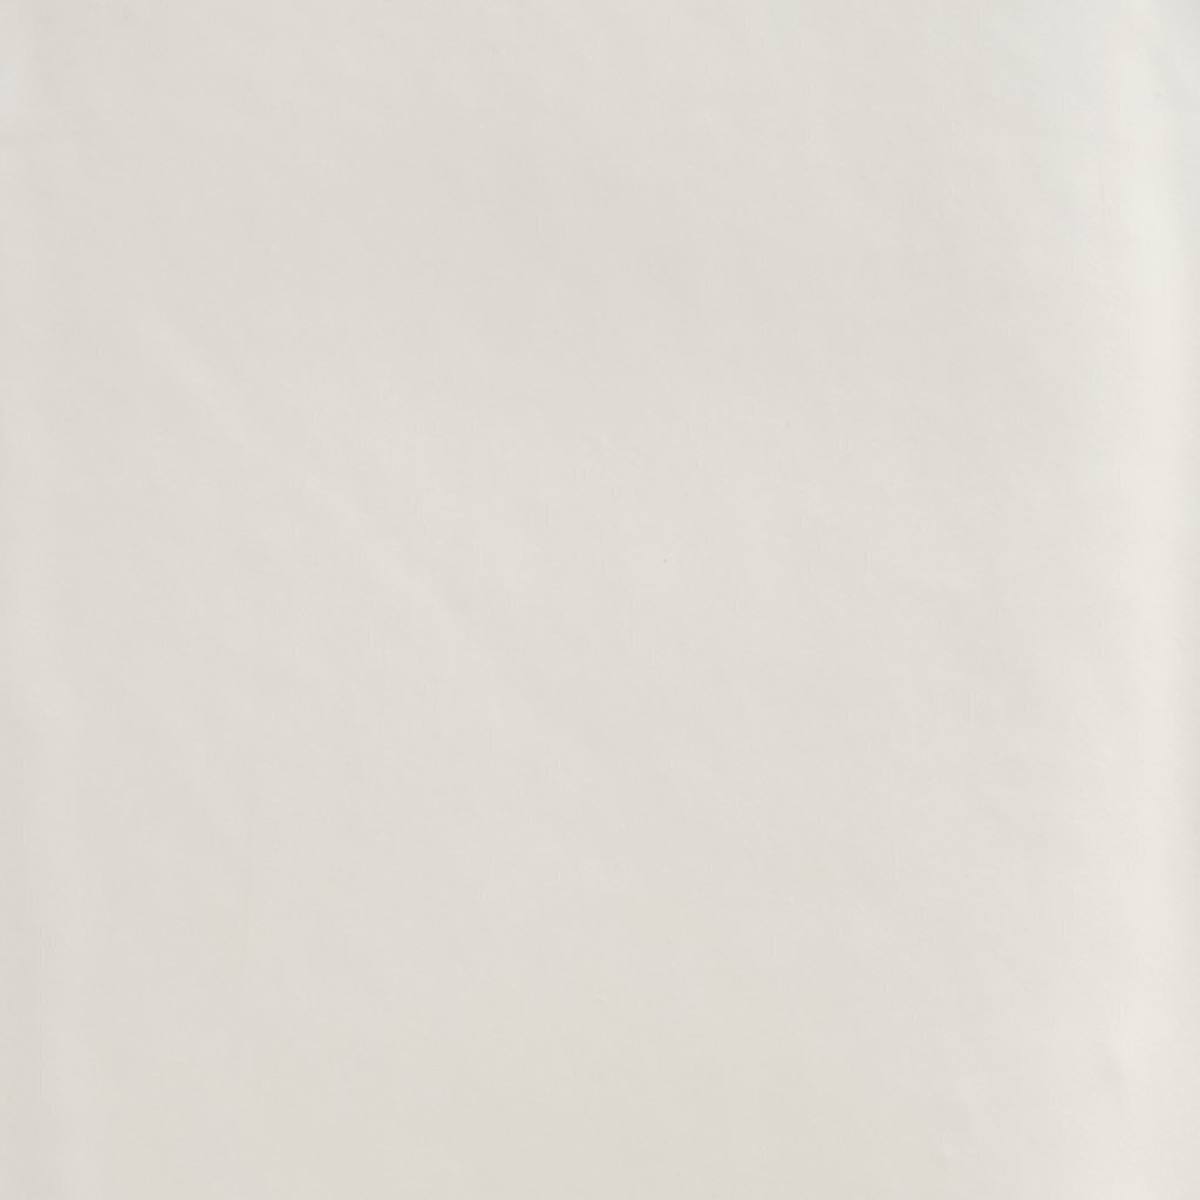 Cinta adhesiva multiuso de PVC 764 de 3M, blanca, 50 mm x 33 m, embalada individualmente en un práctico embalaje